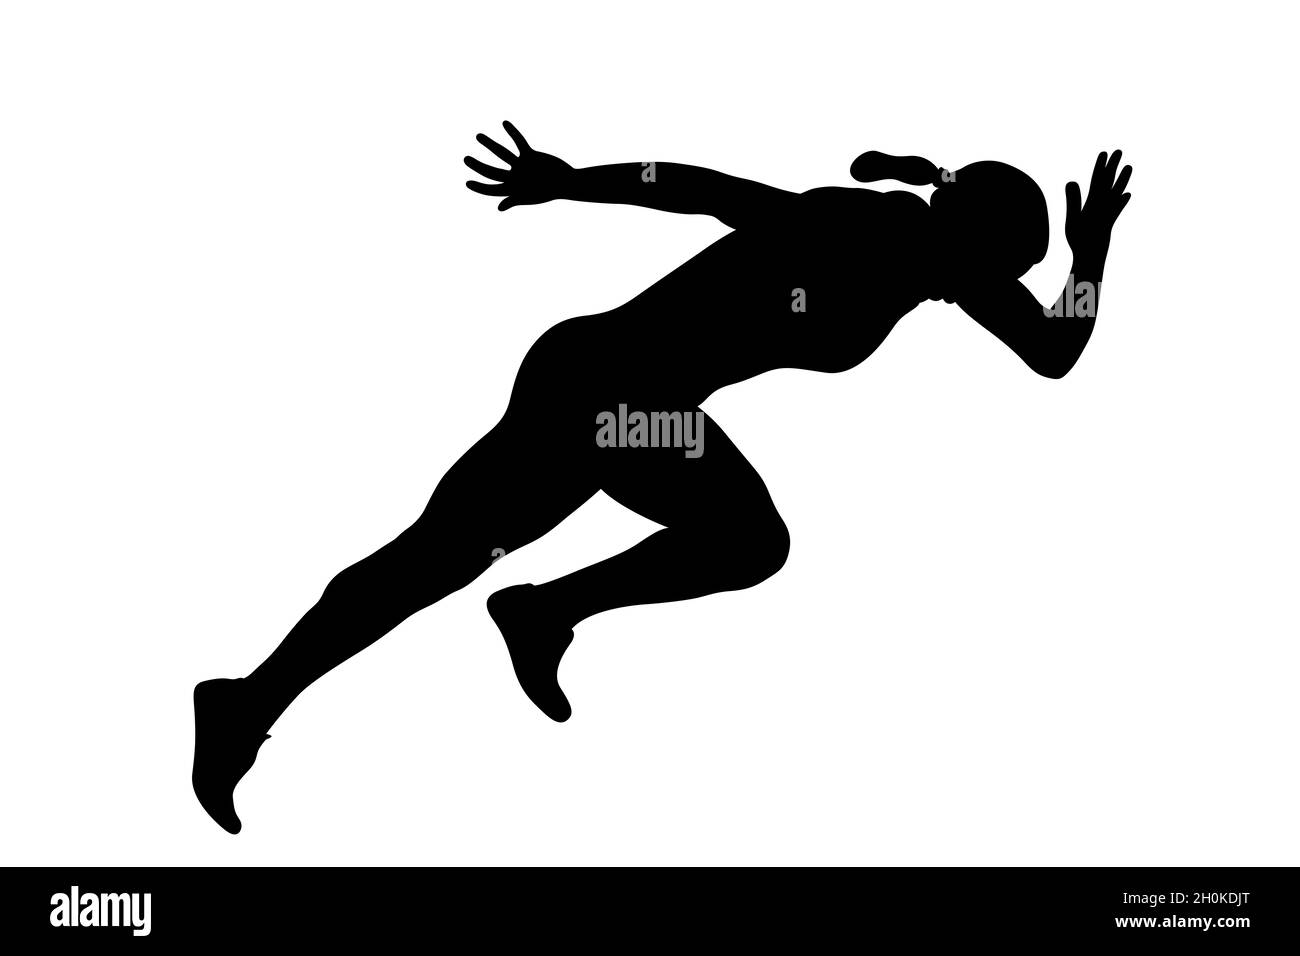 start running sprint female athlete black silhouette Stock Photo